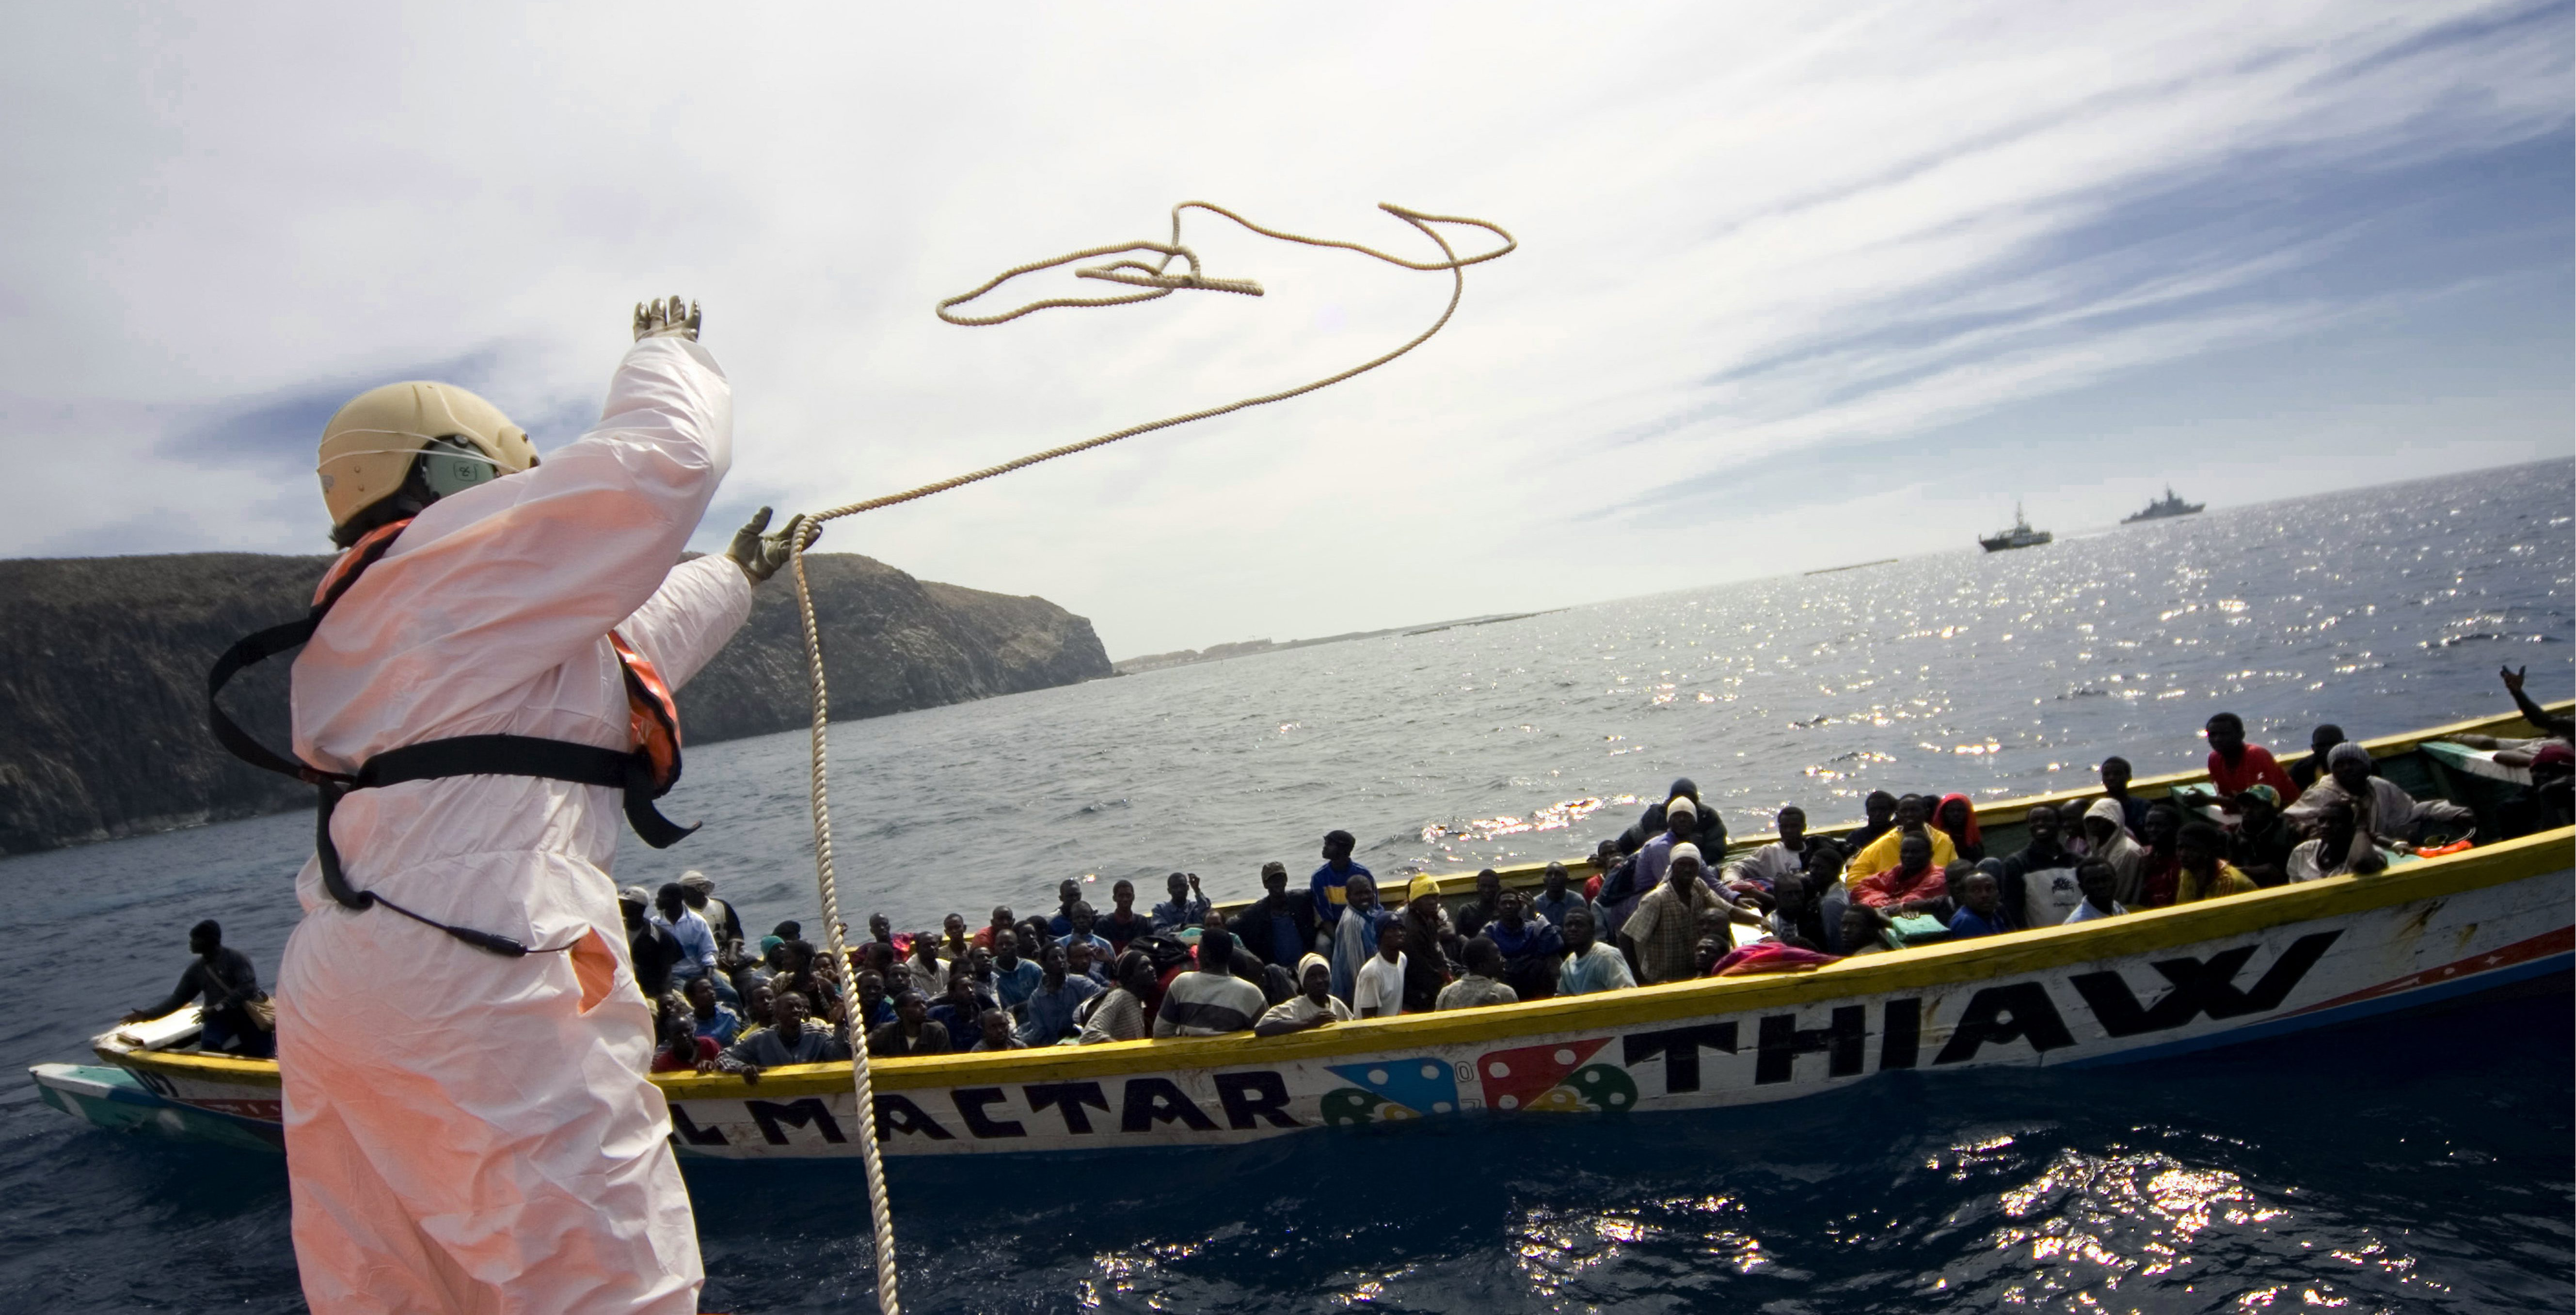 Espanjan rajavartiosto heittää köyden siirtolaisten veneeseen.